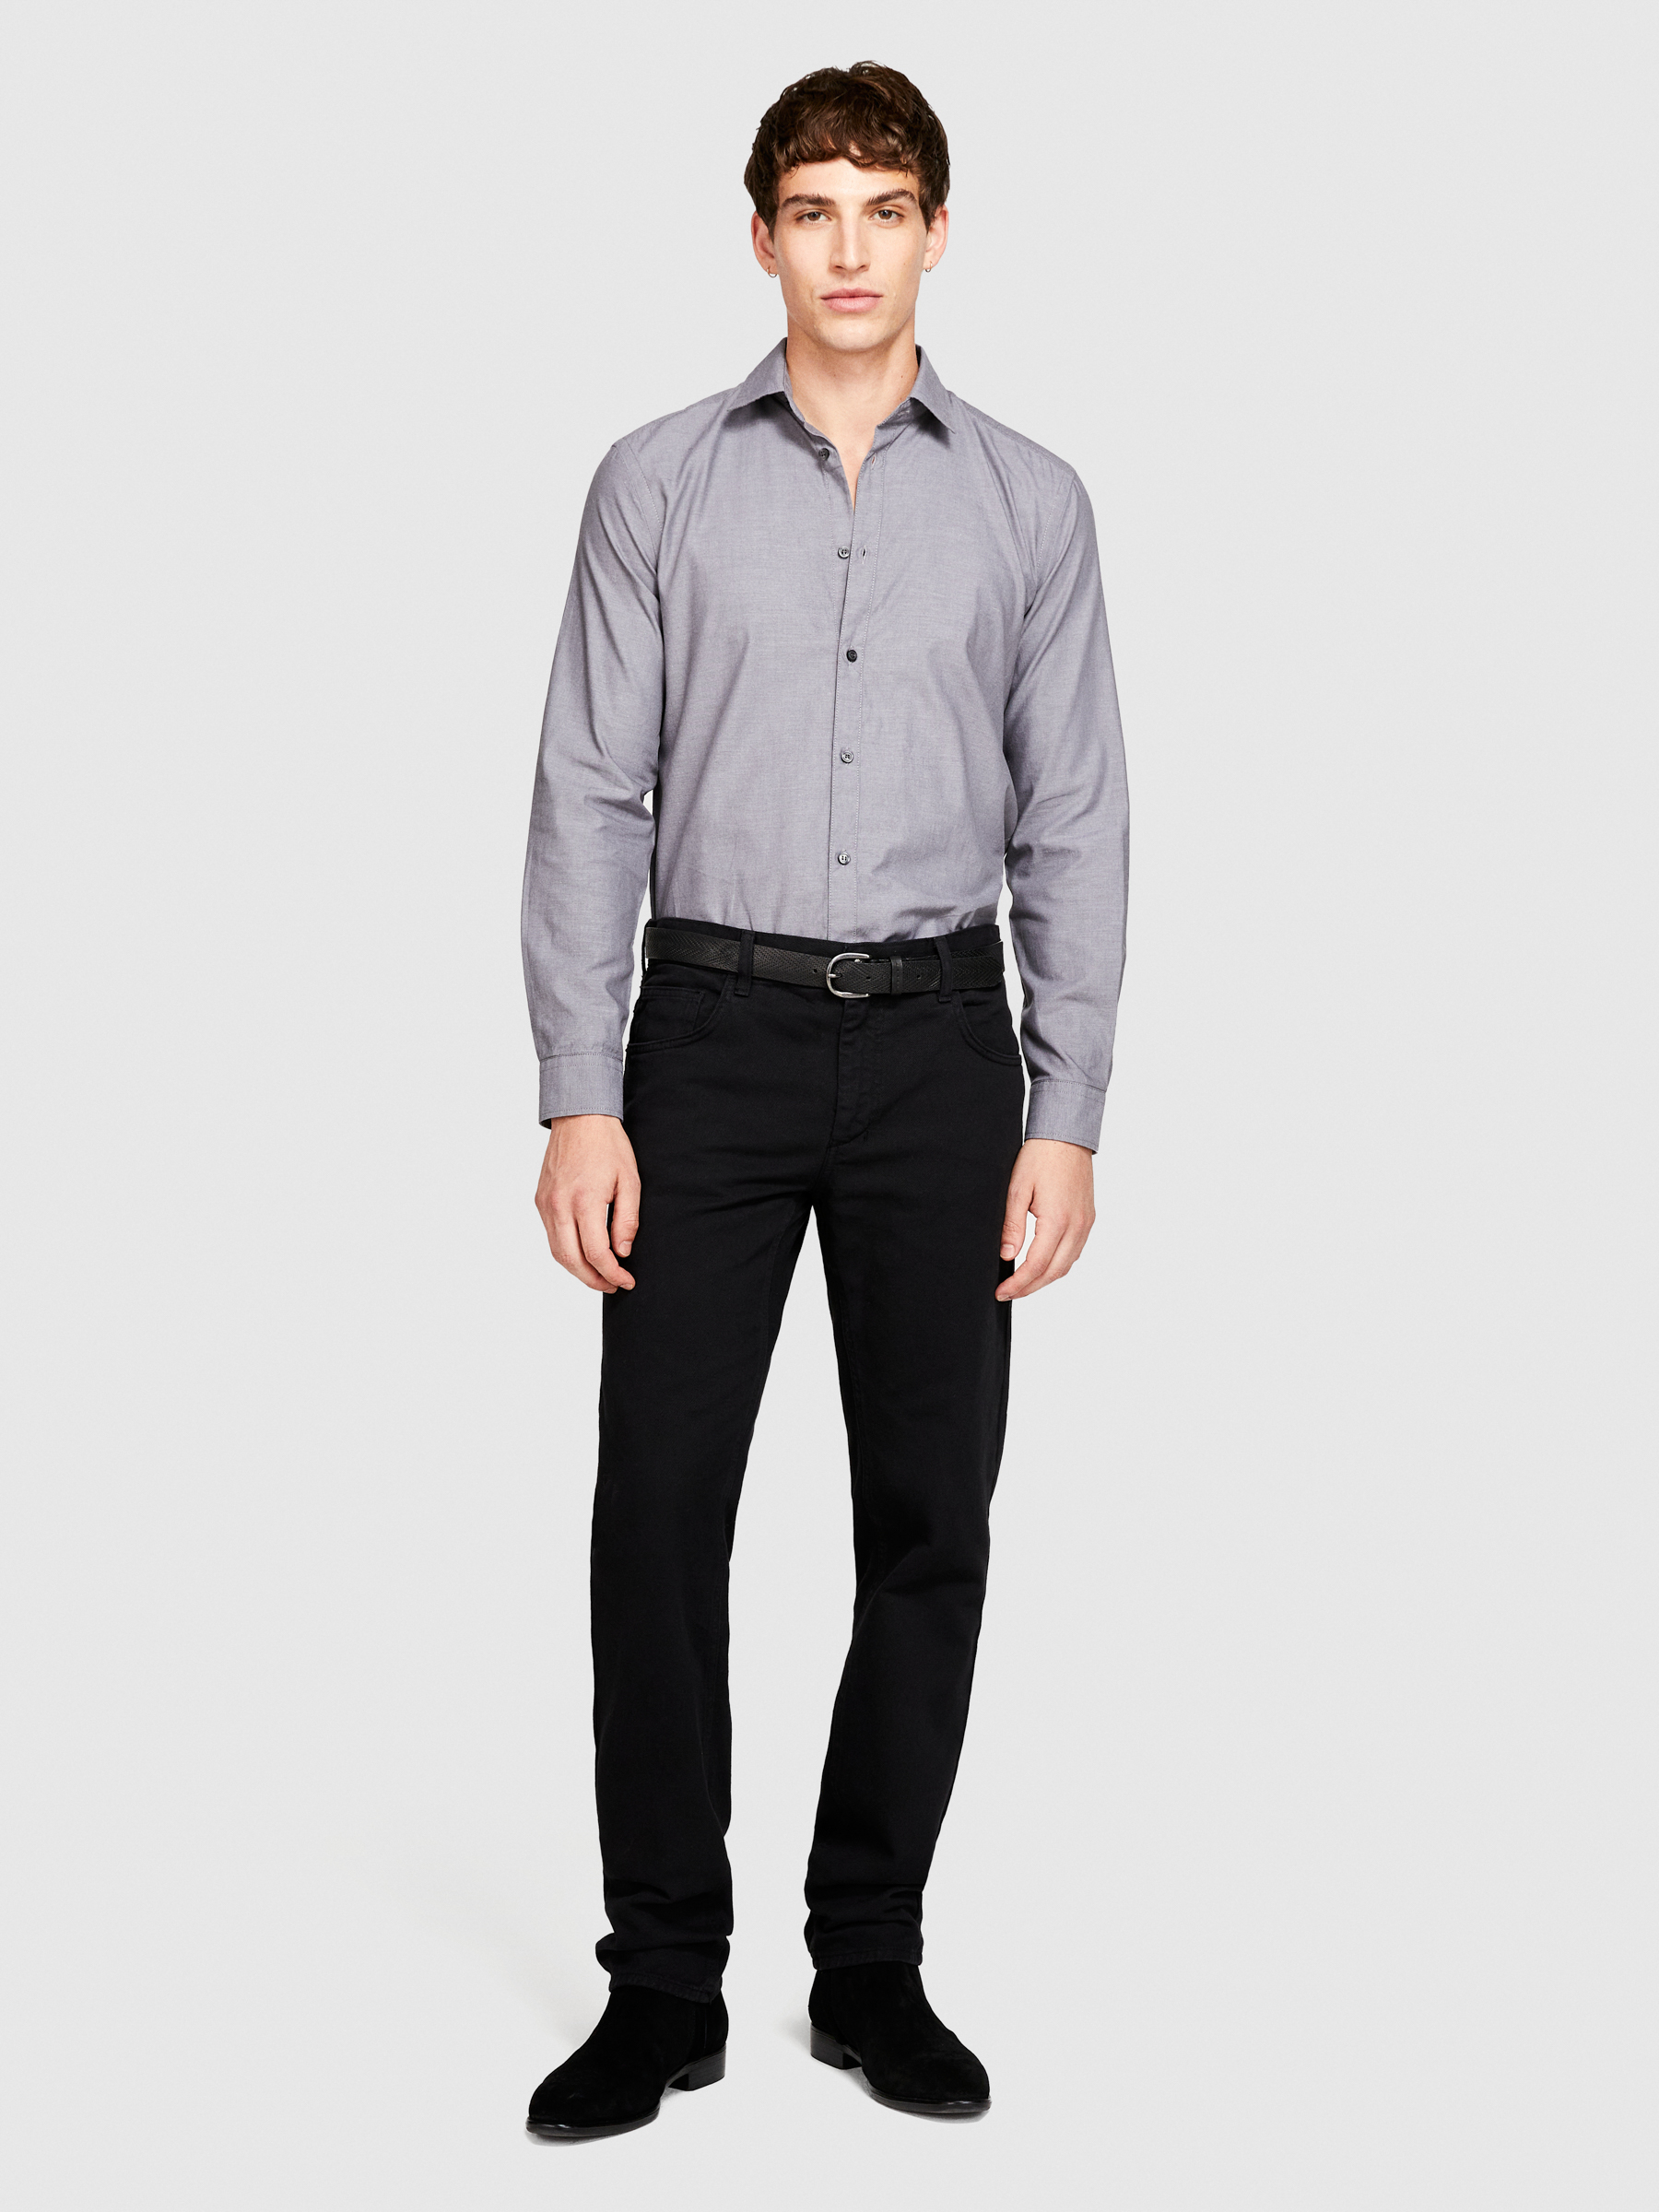 Sisley - 100% Cotton Shirt, Man, Gray, Size: 42